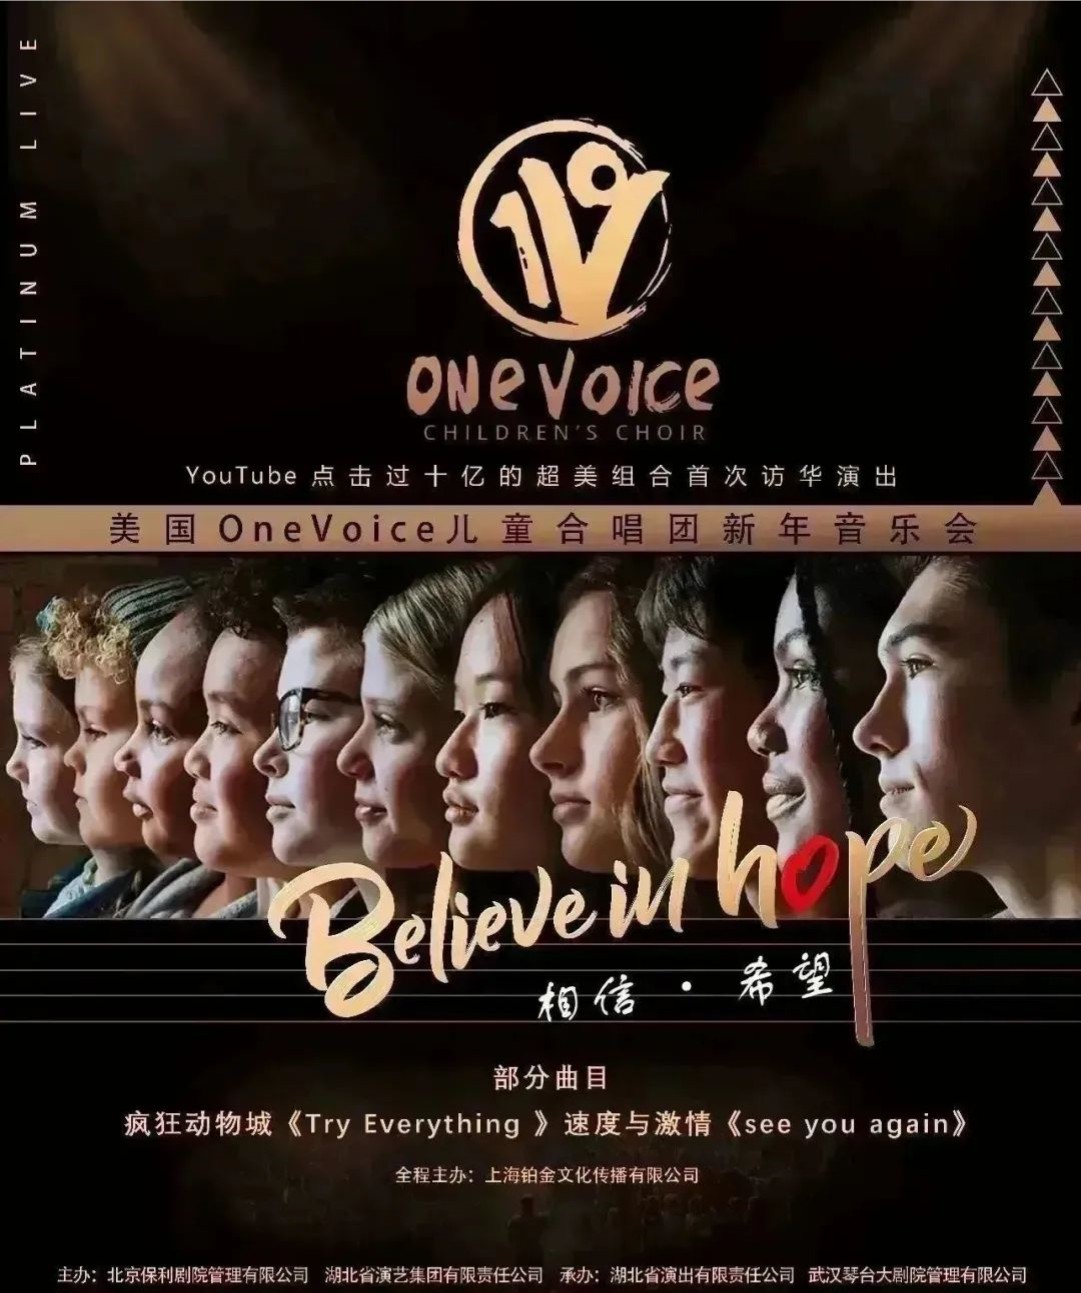 【武汉】美国OneVoice儿童合唱团新年音乐会武汉站